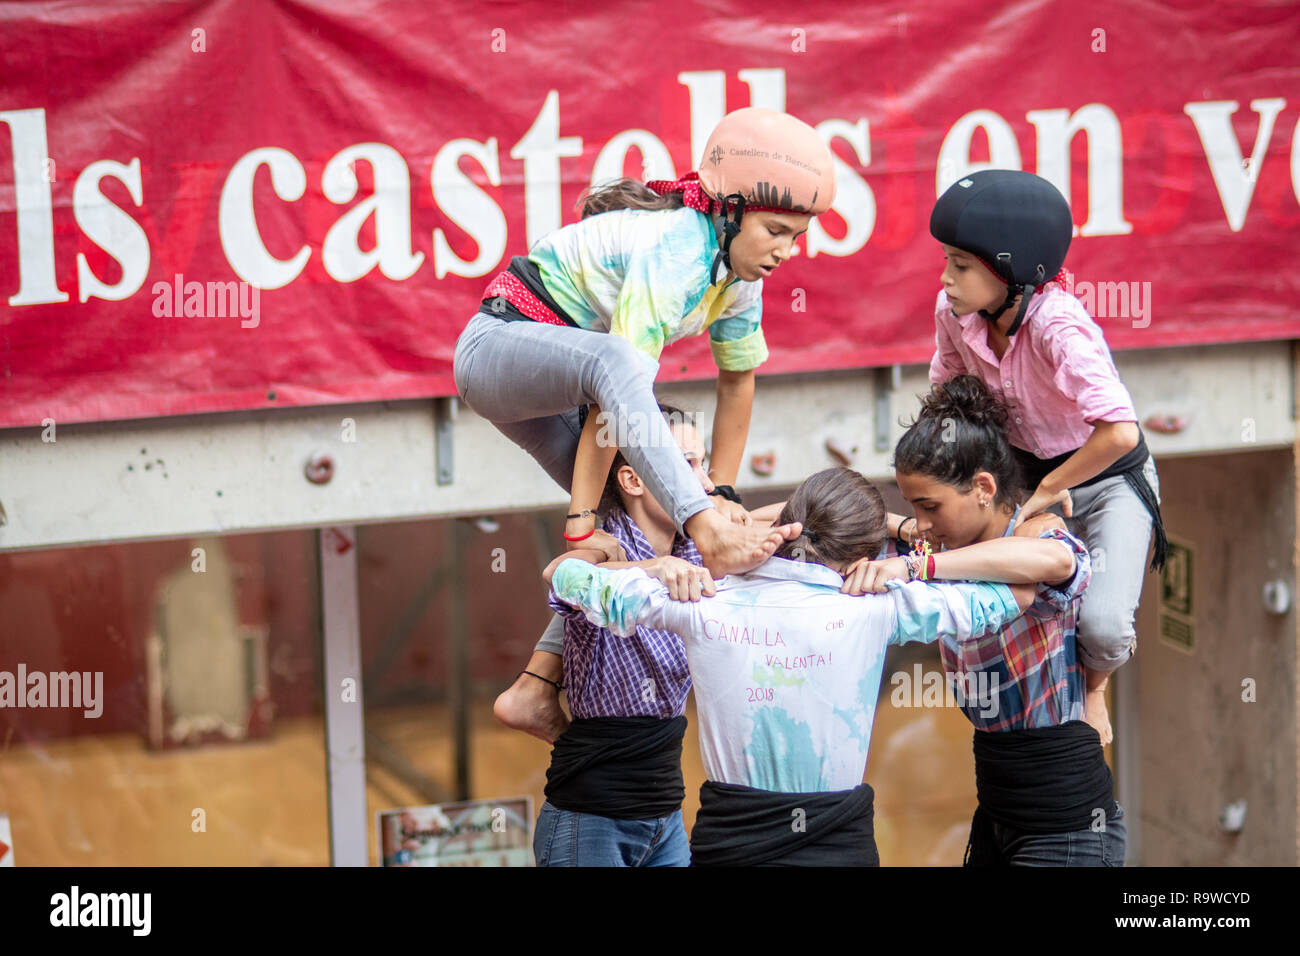 Castellers de Barcelona (tours humaines) - Enfants Castellers, Barcelone, Espagne Banque D'Images